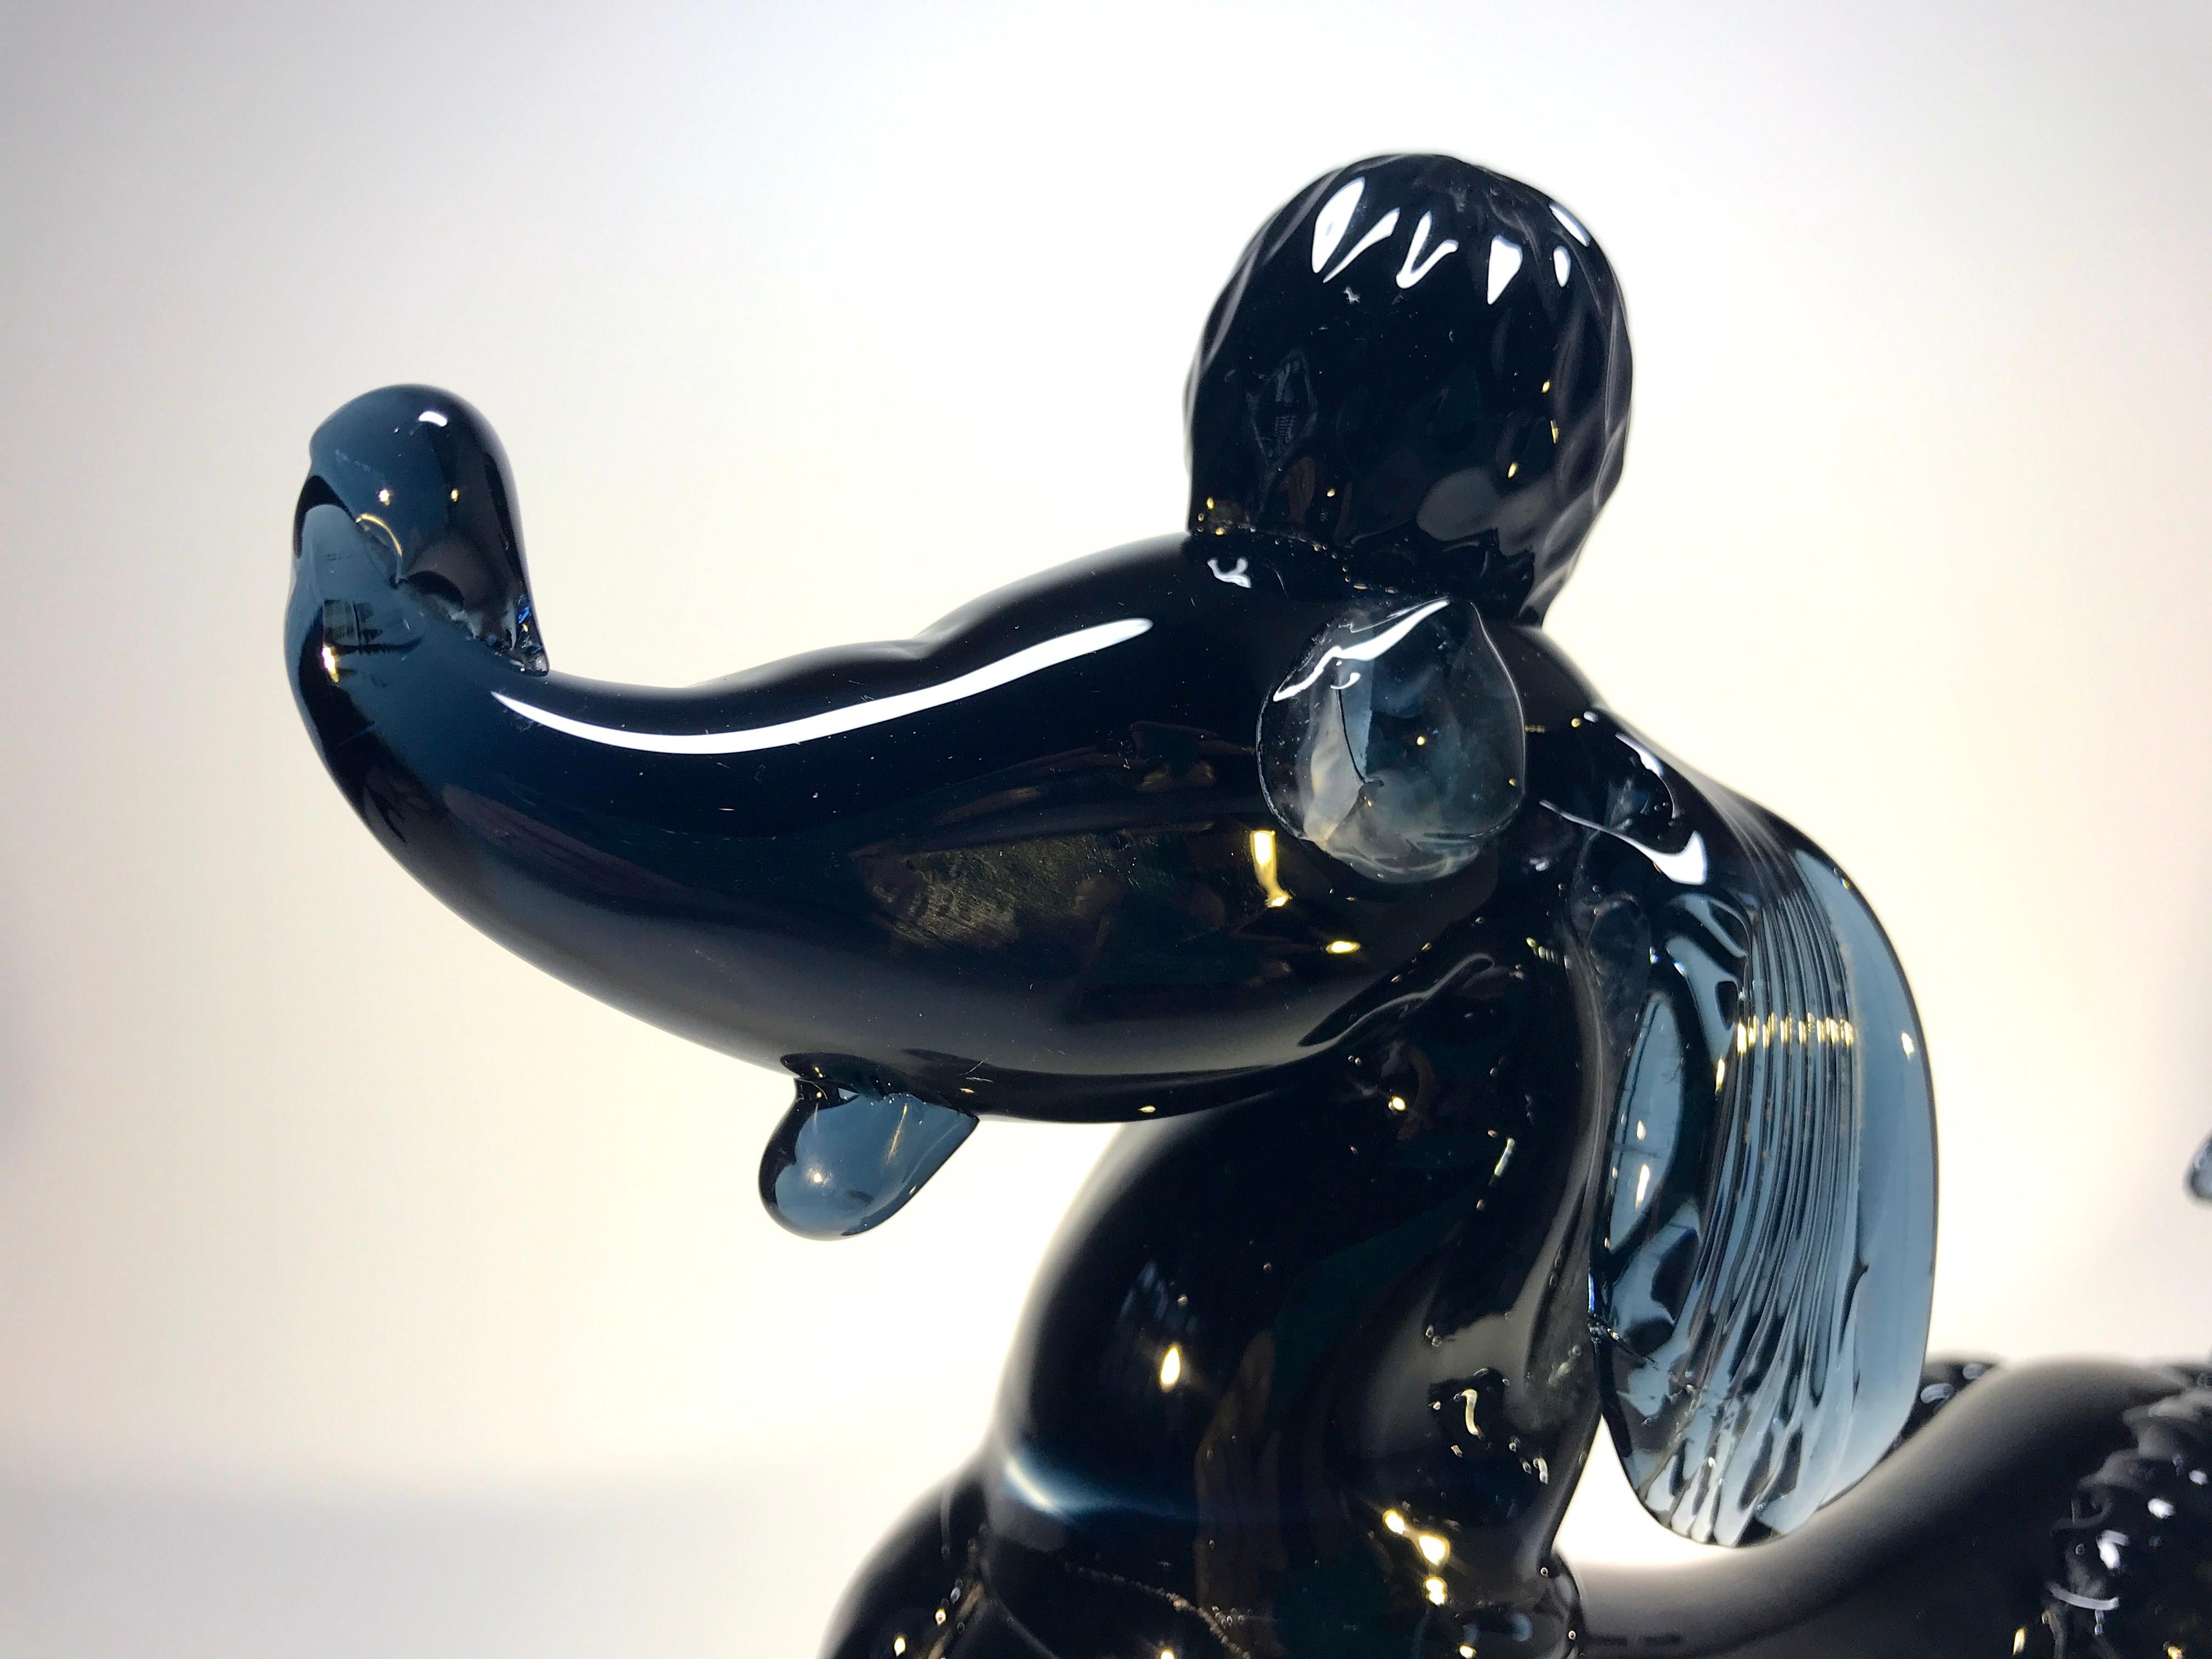 Une fabuleuse et étonnante figure de caniche français en verre de Murano - suintant le chic parisien !
La couleur est bleu nuit, presque noir, avec un soupçon d'indigo
Cette pièce a une présence massive,
vers les années 1960
Substantiel et